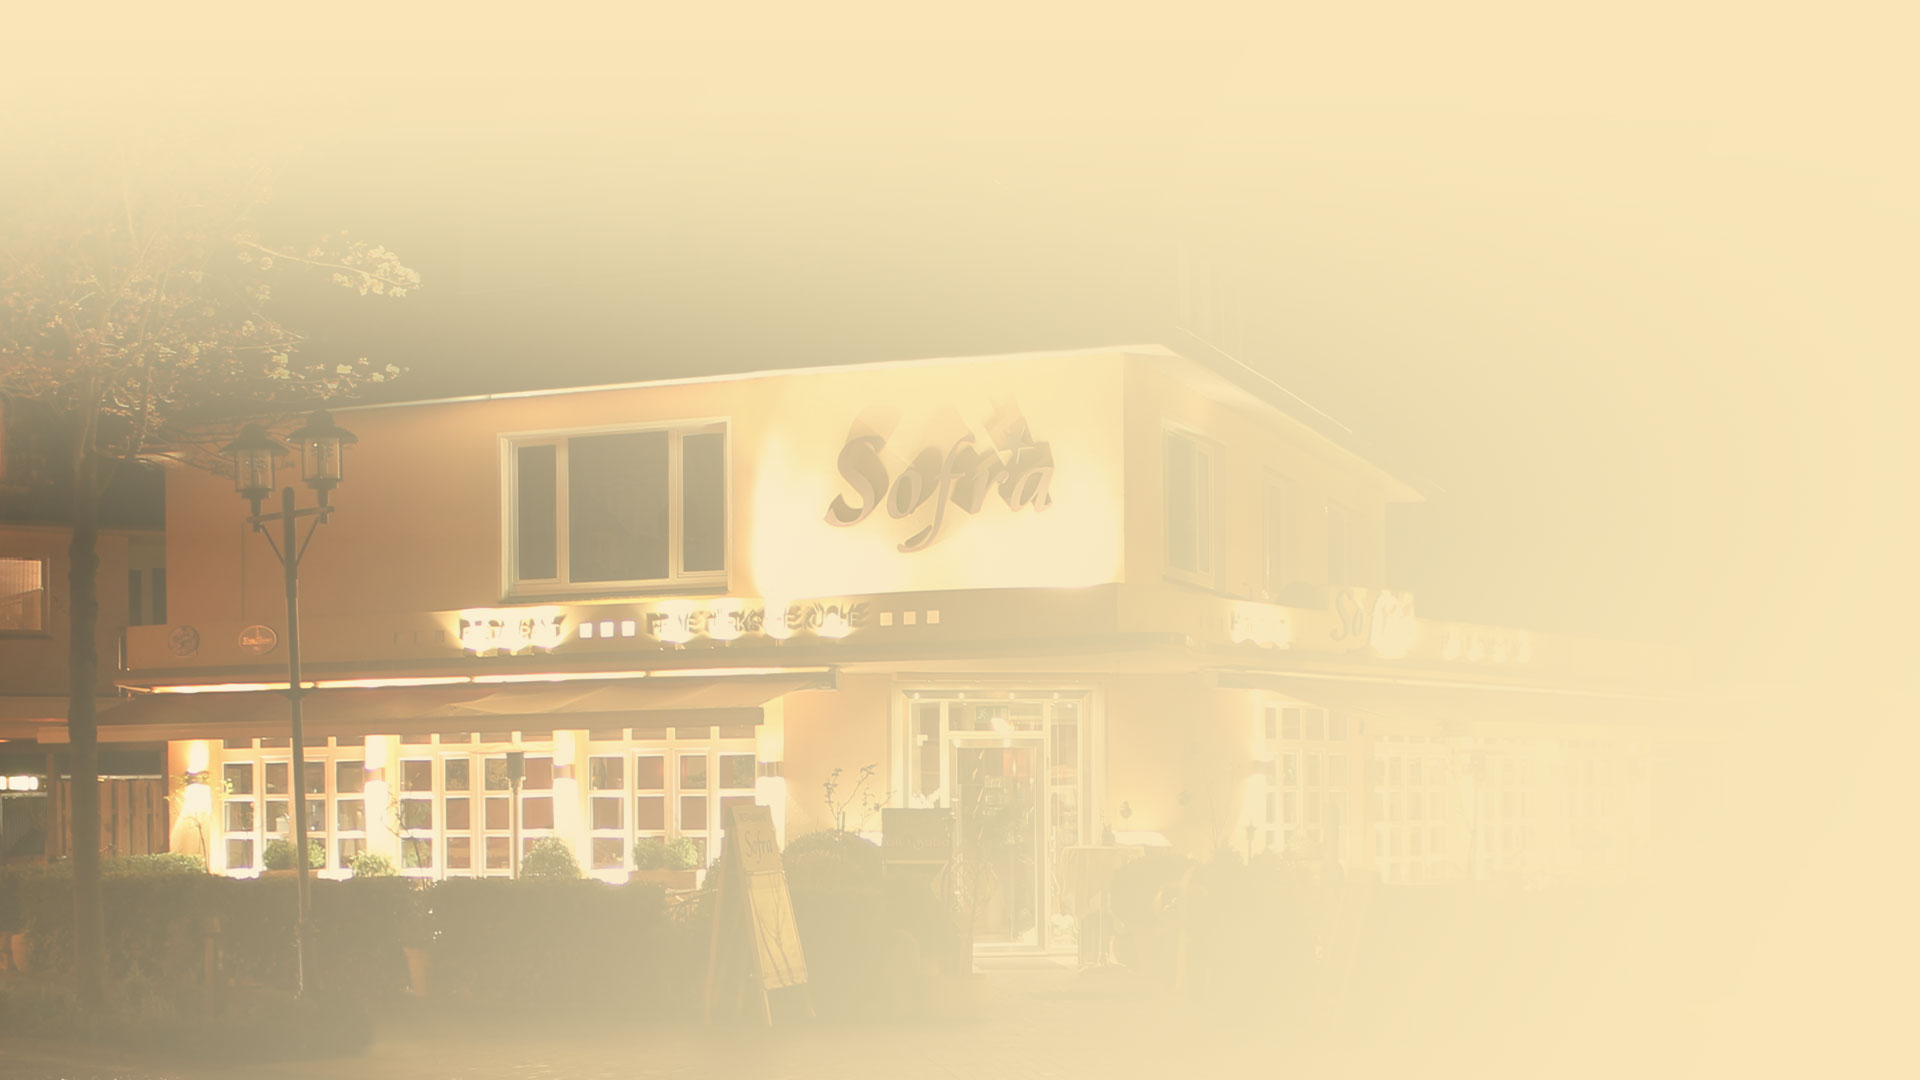 Sofra_Slider_Startseite_Restaurant